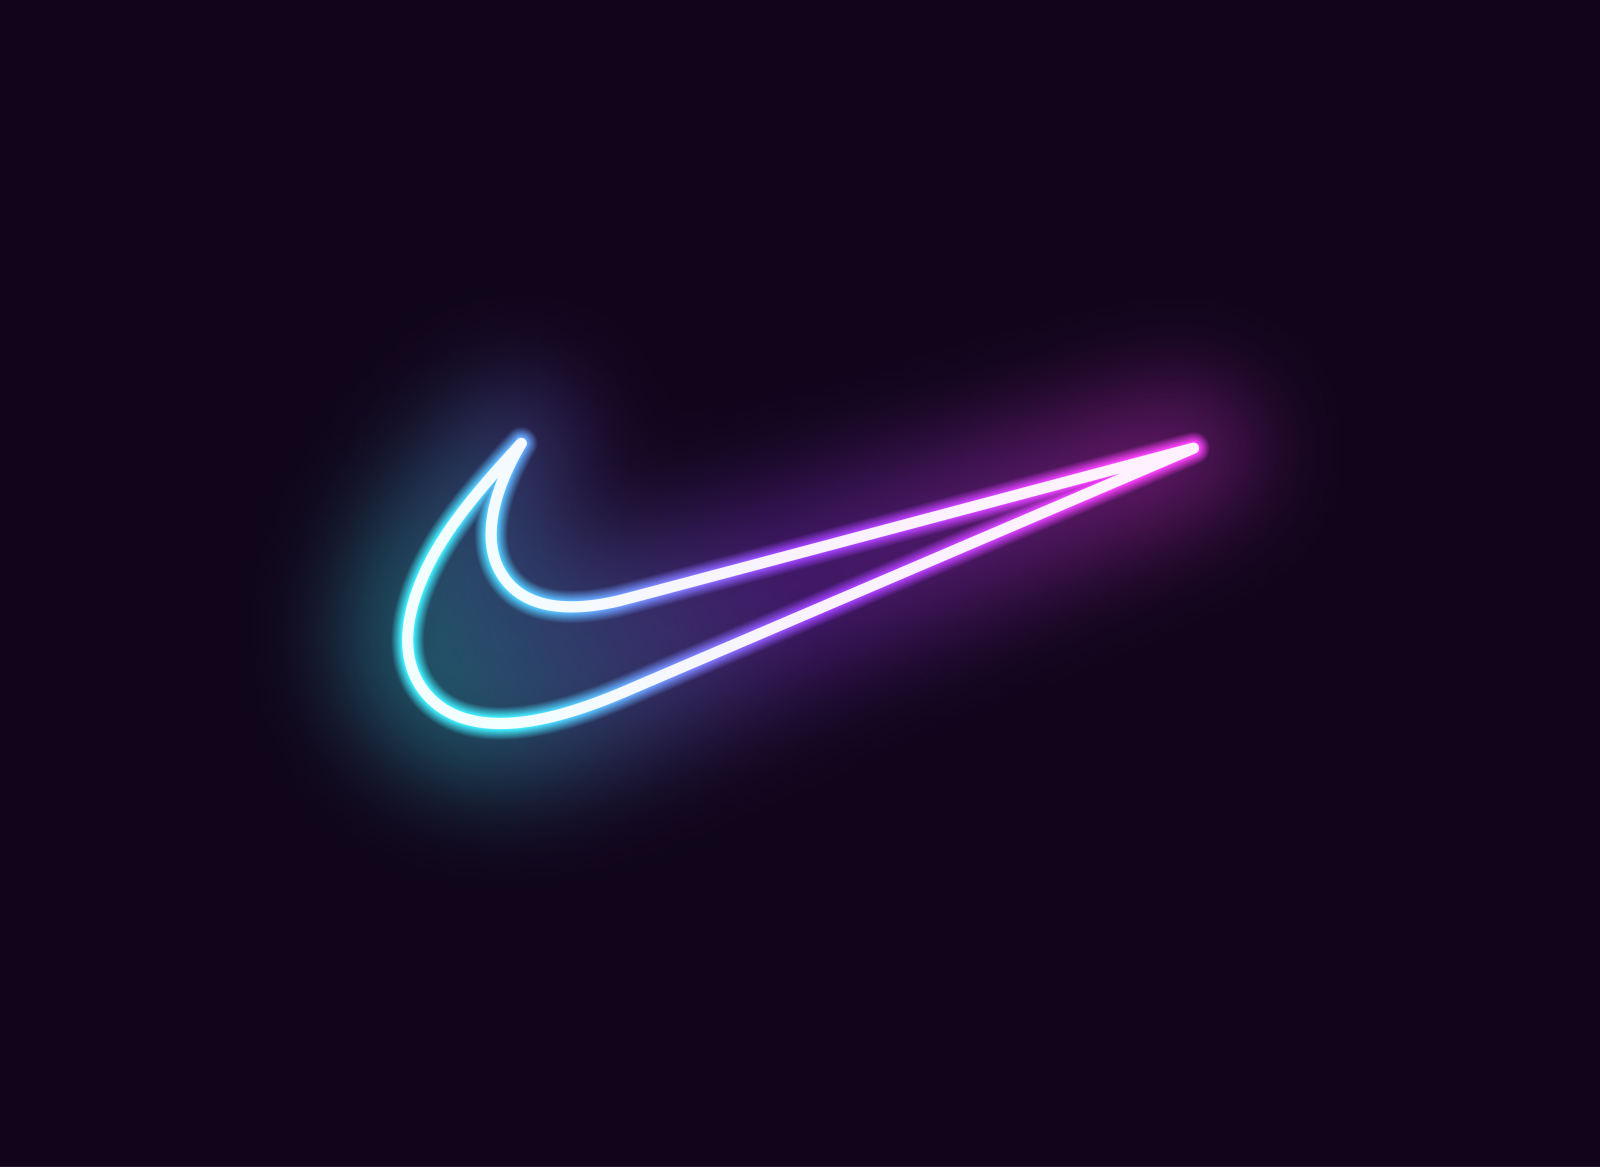 Neon Nike Logo by Dmitry Mayer on Dribbble